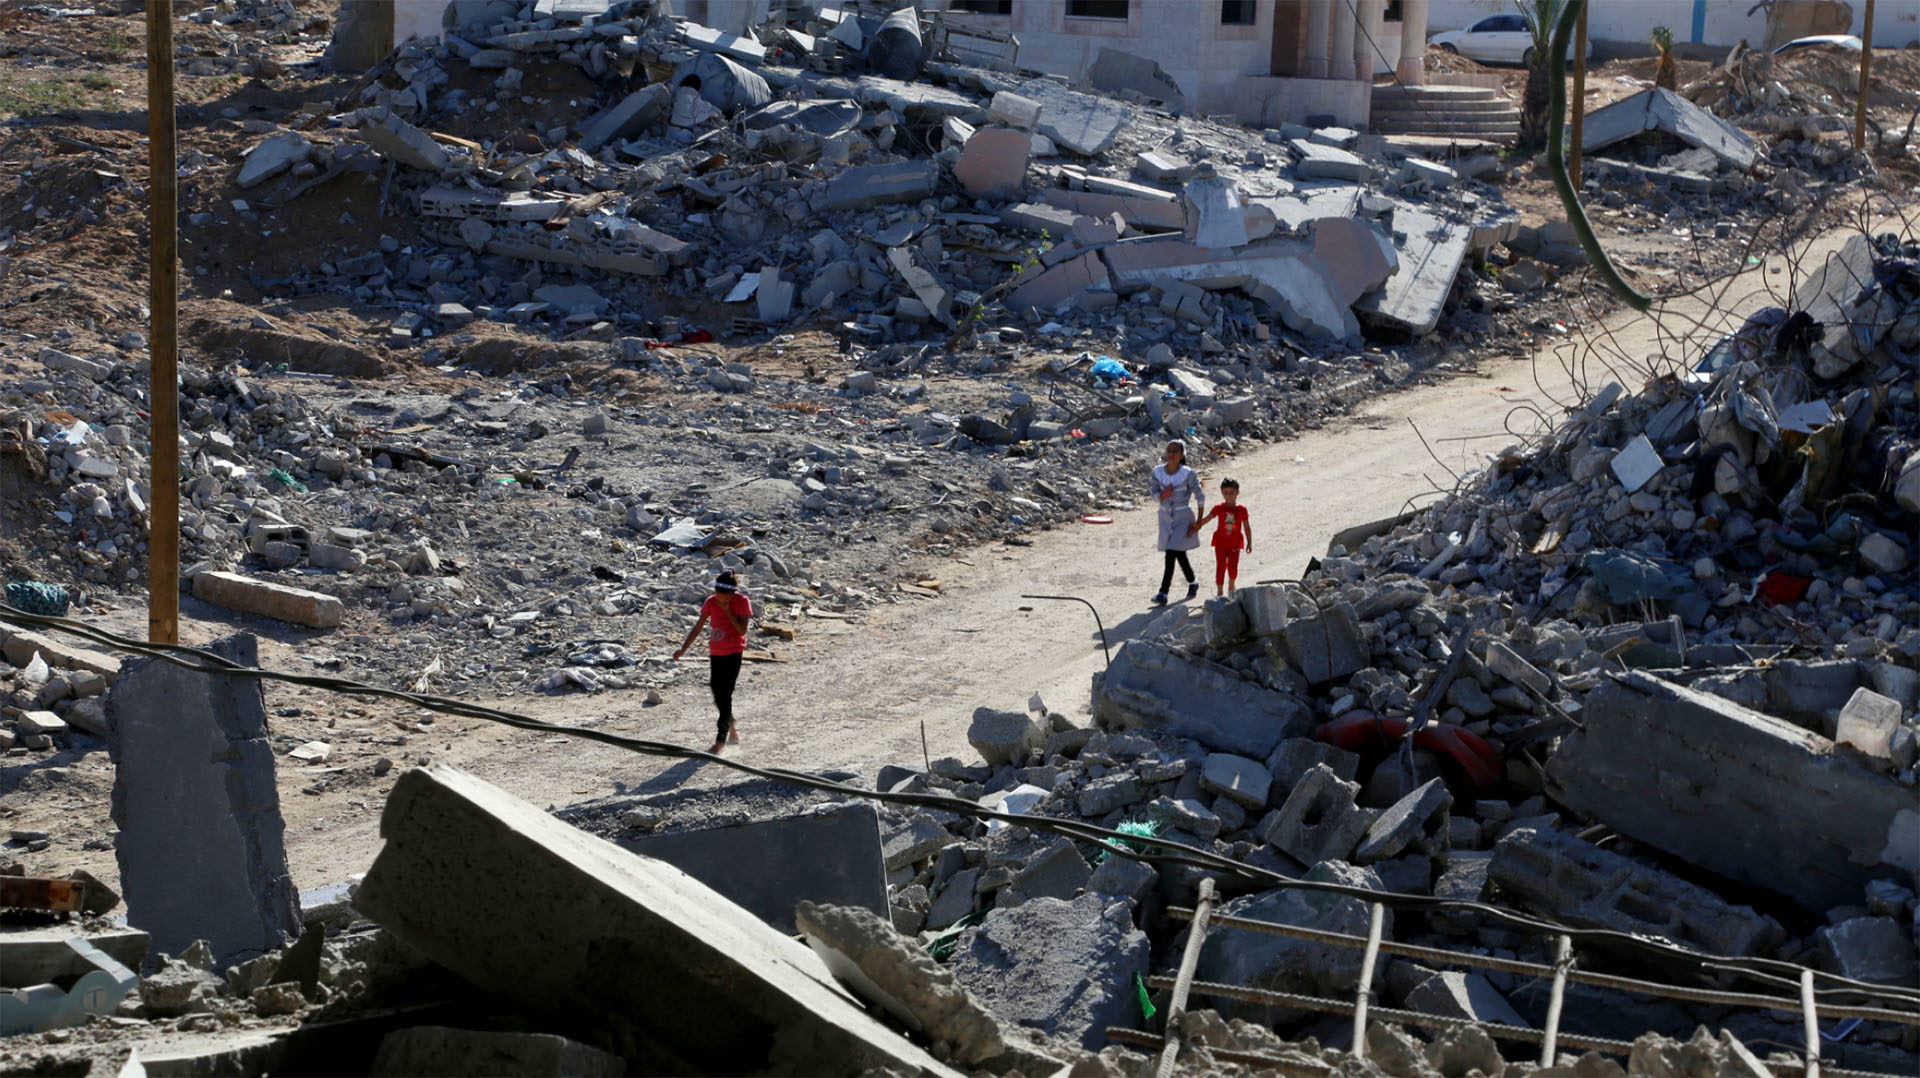 Des maisons détruites à Gaza | pixabay.com/badwanart0 CC0